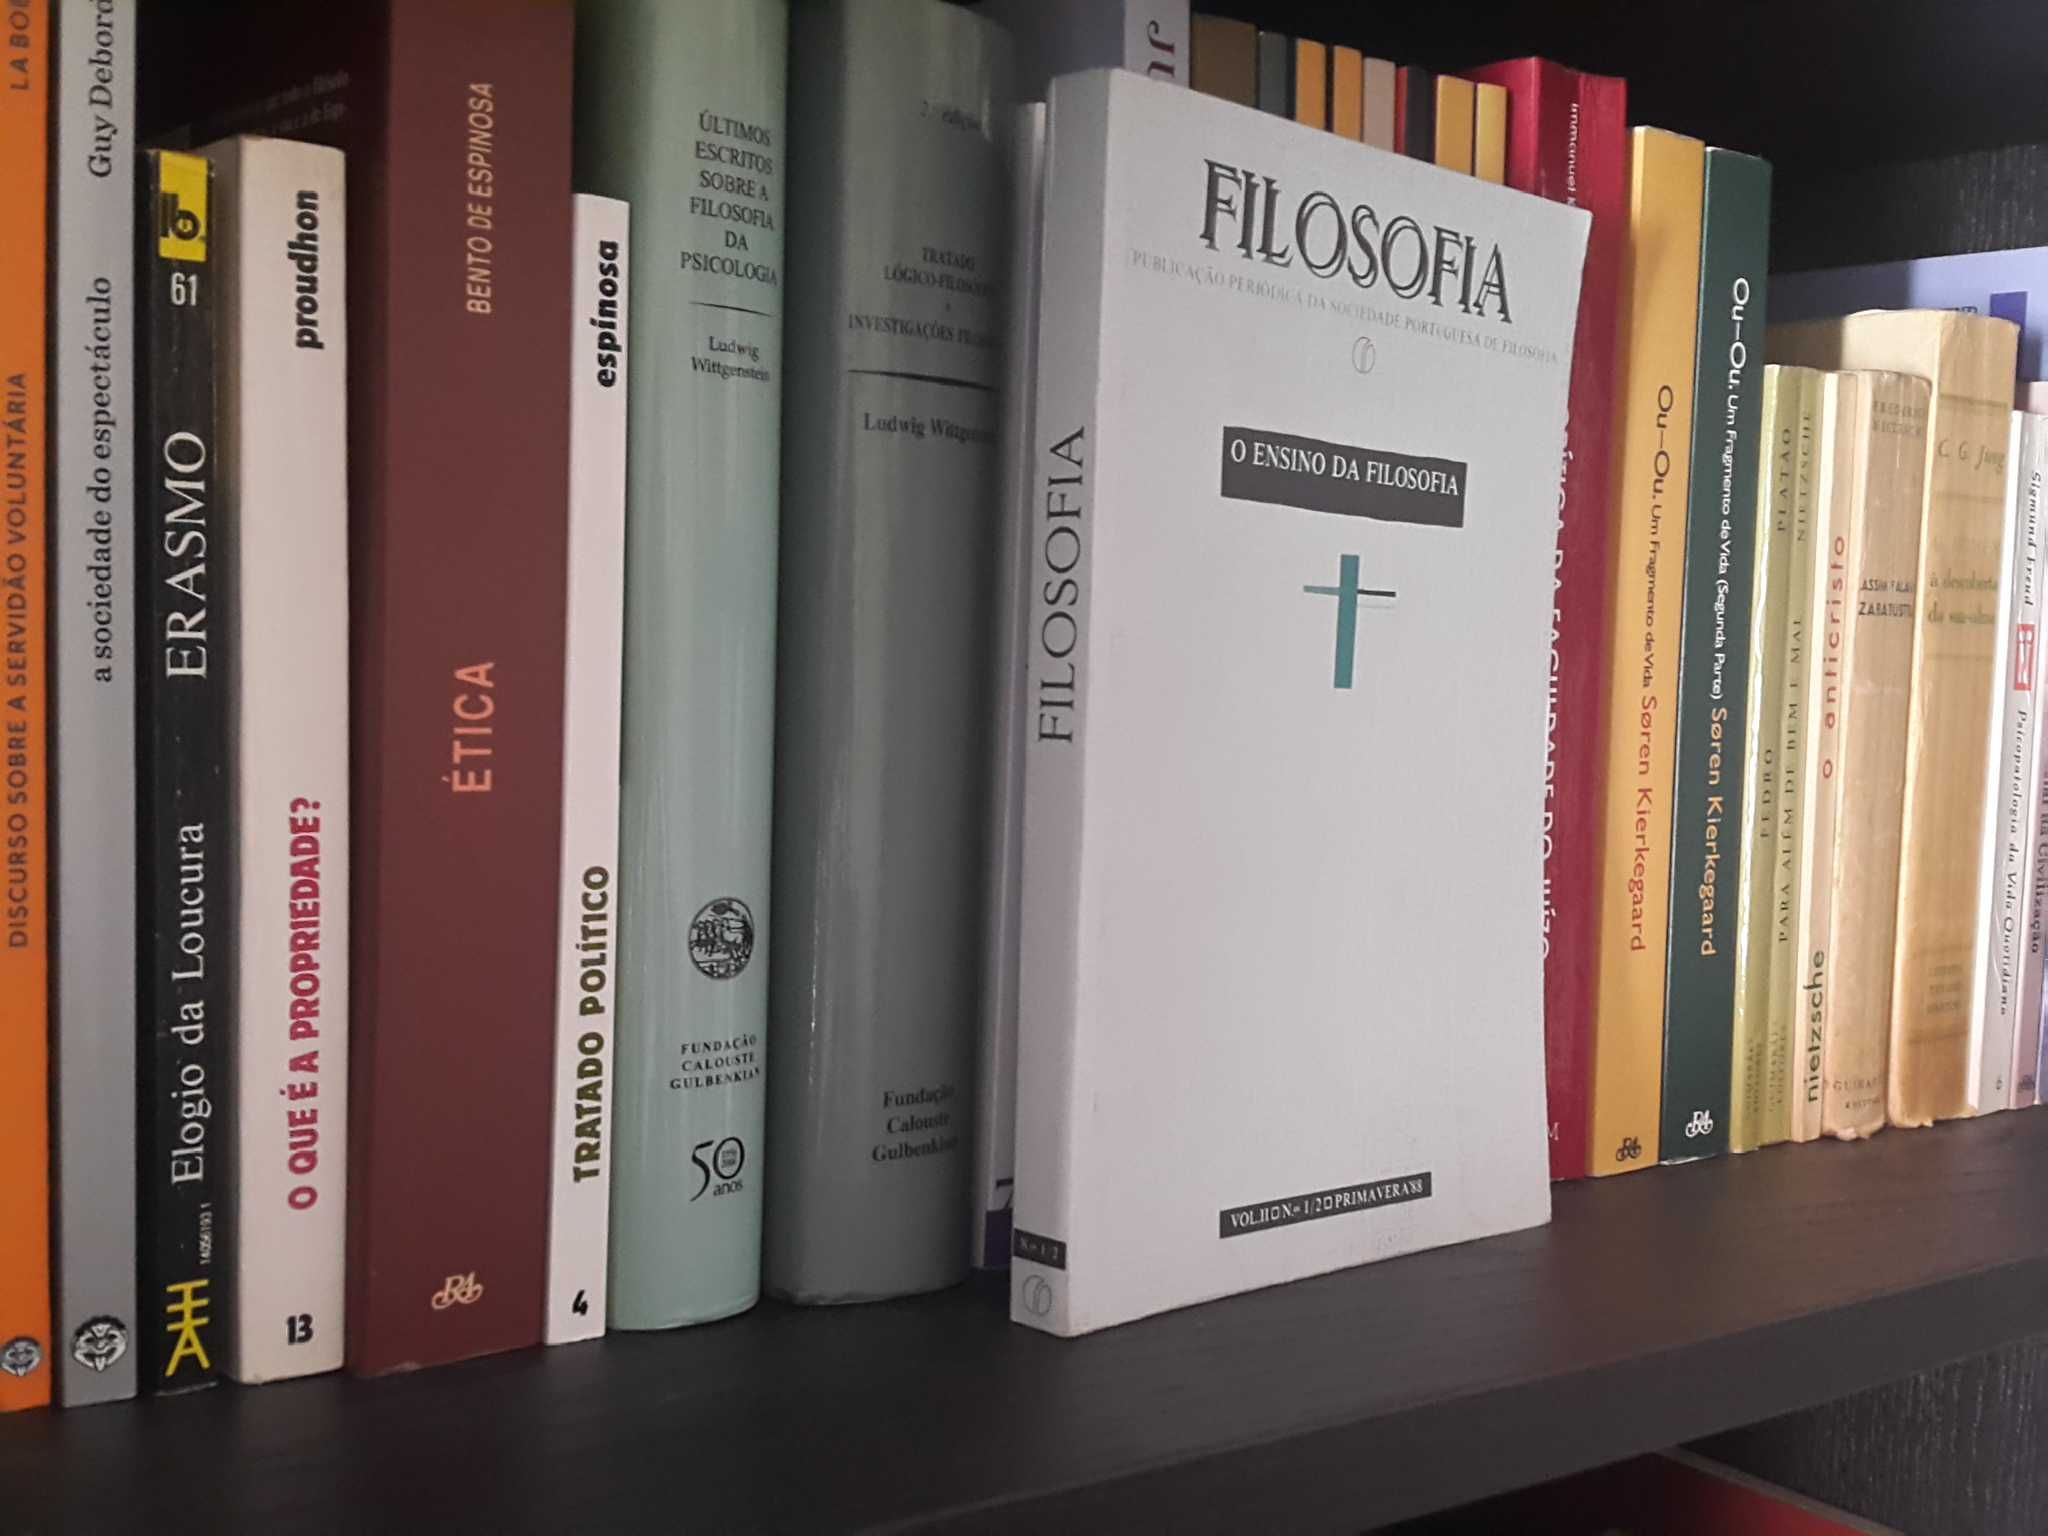 O Ensino da Filosofia (Sociedade Portuguesa da Filosofia)